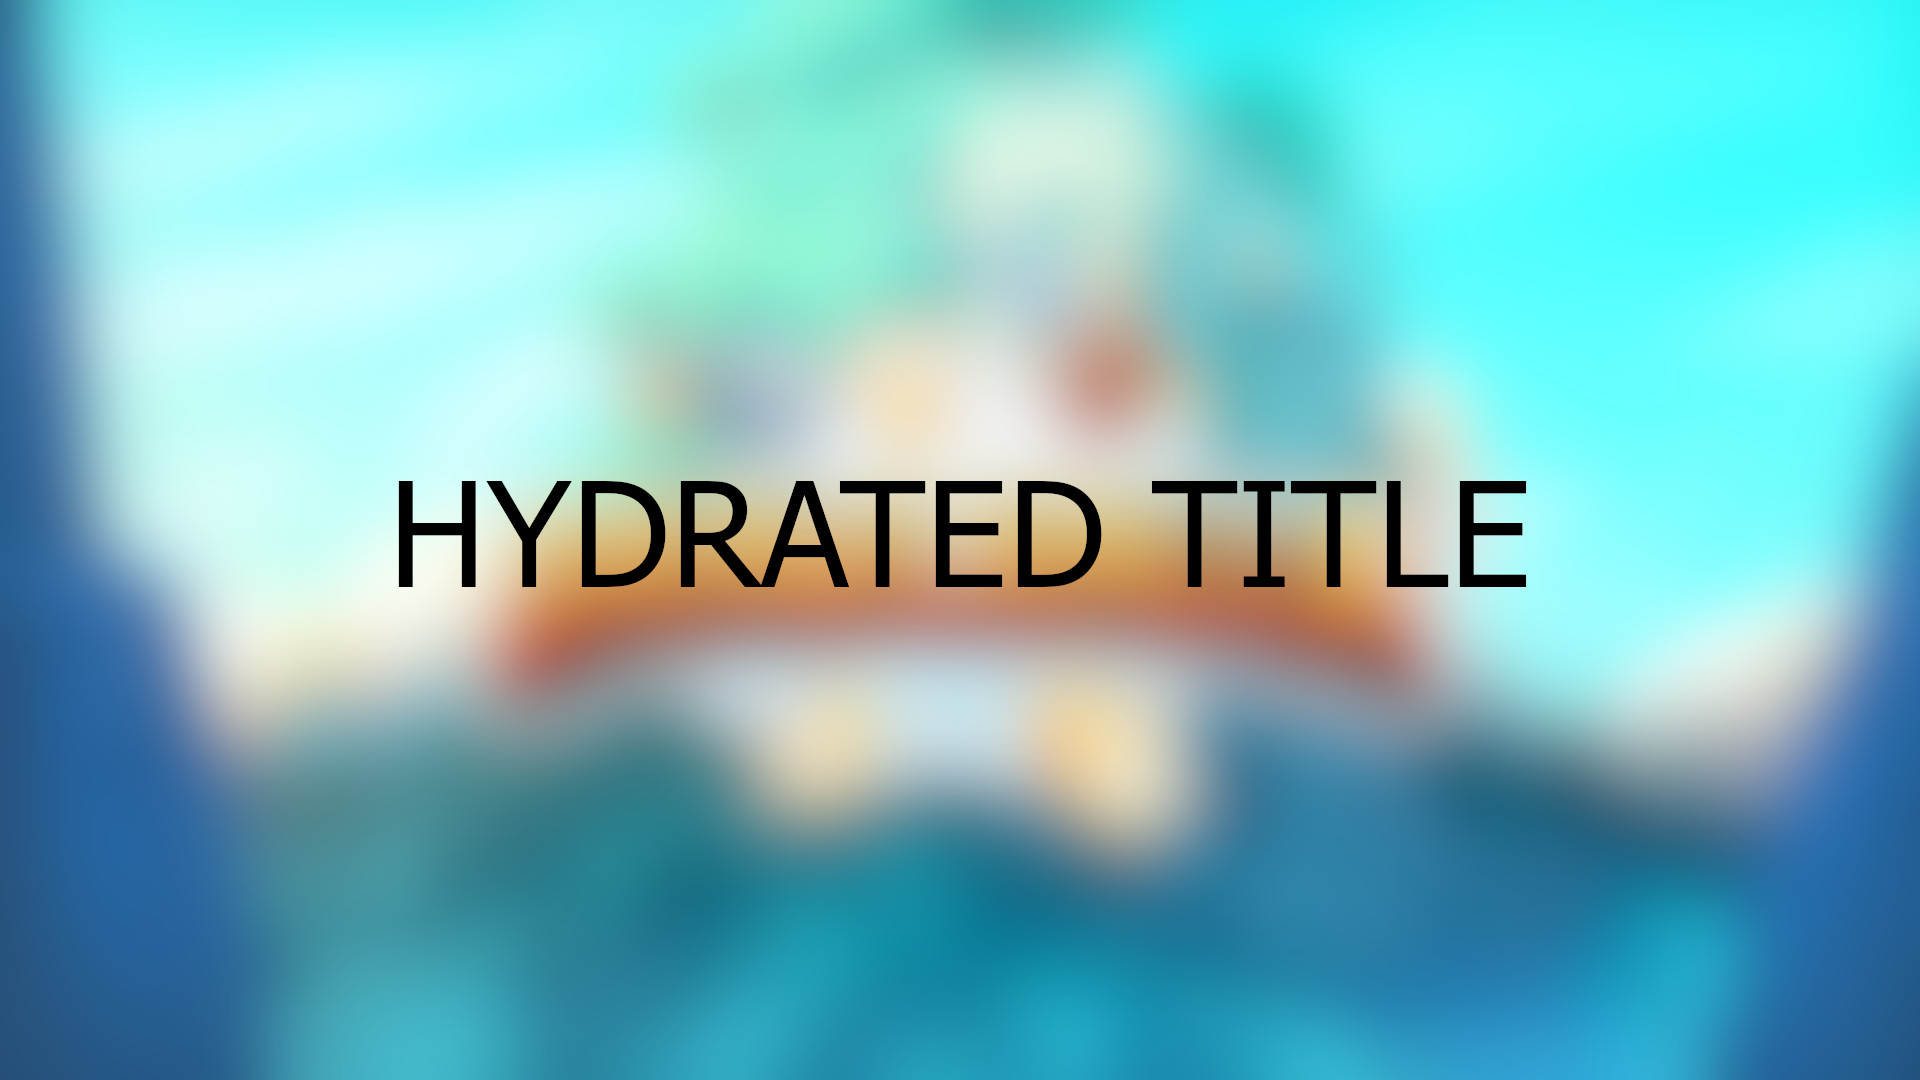 Brawlhalla - Hydrated Title DLC CD Key, 0.29$